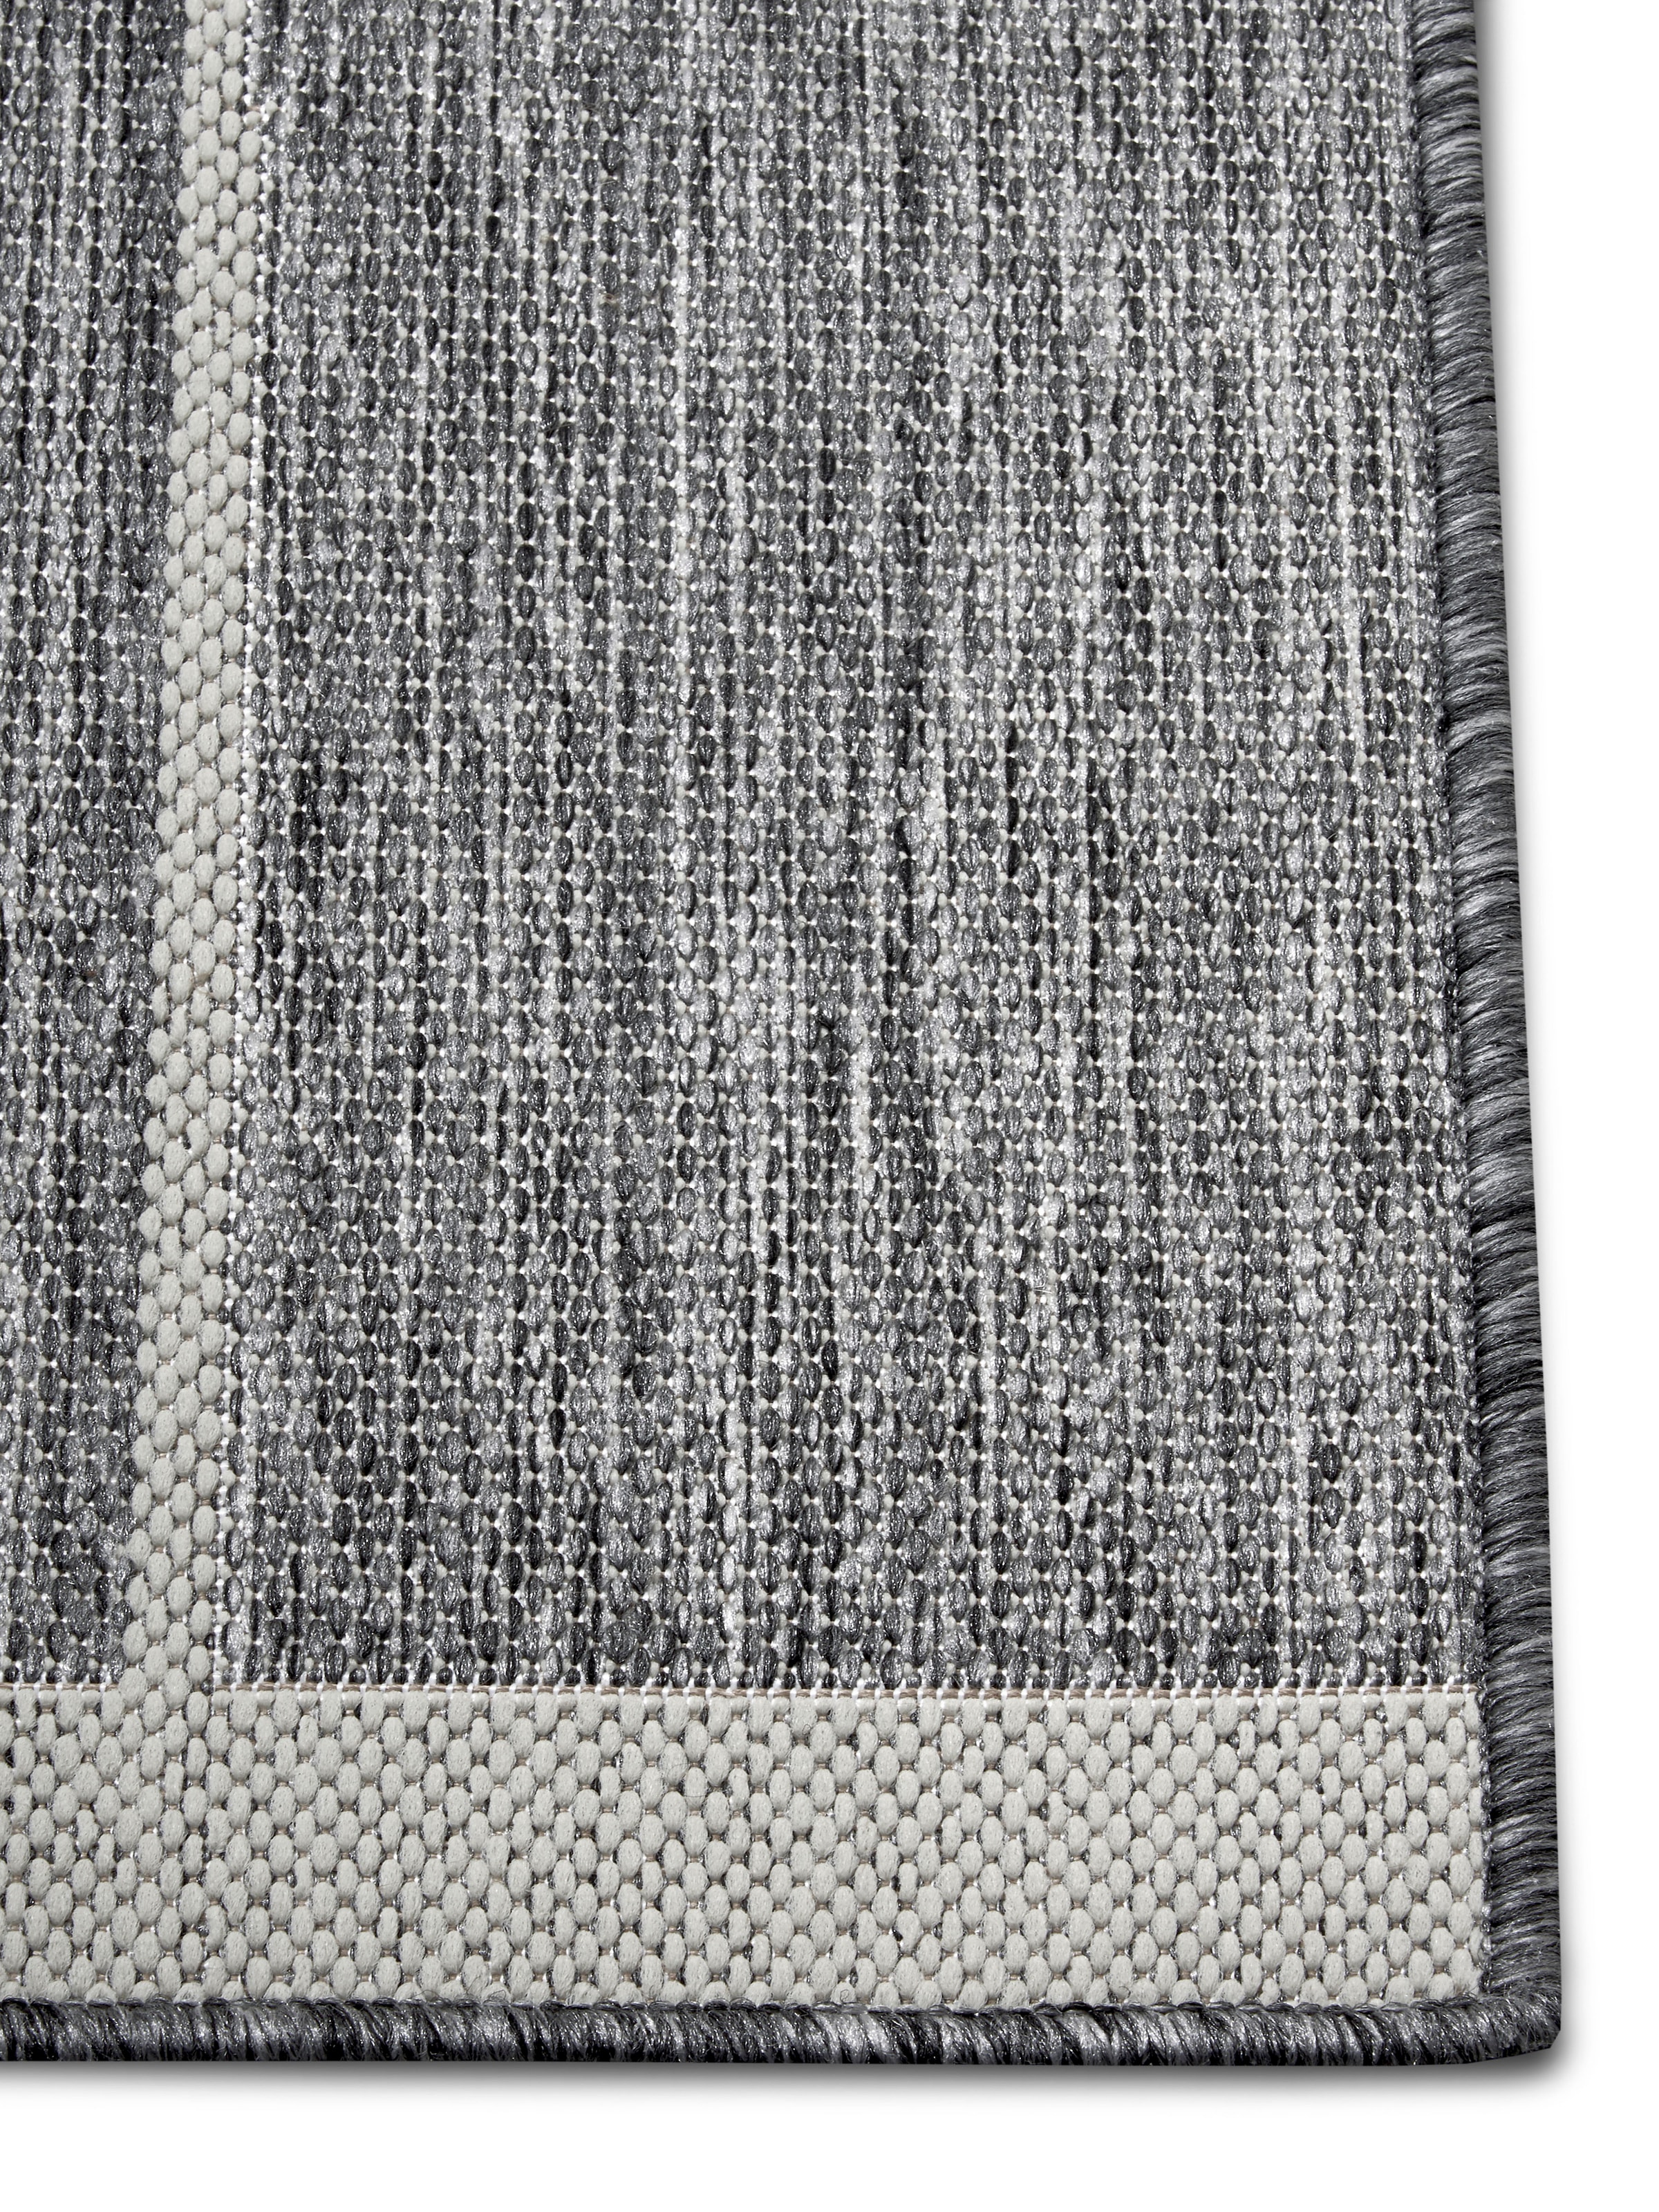 Antirutsch-Teppichunterlage | Weichschaum | Rutschschutz für Teppiche